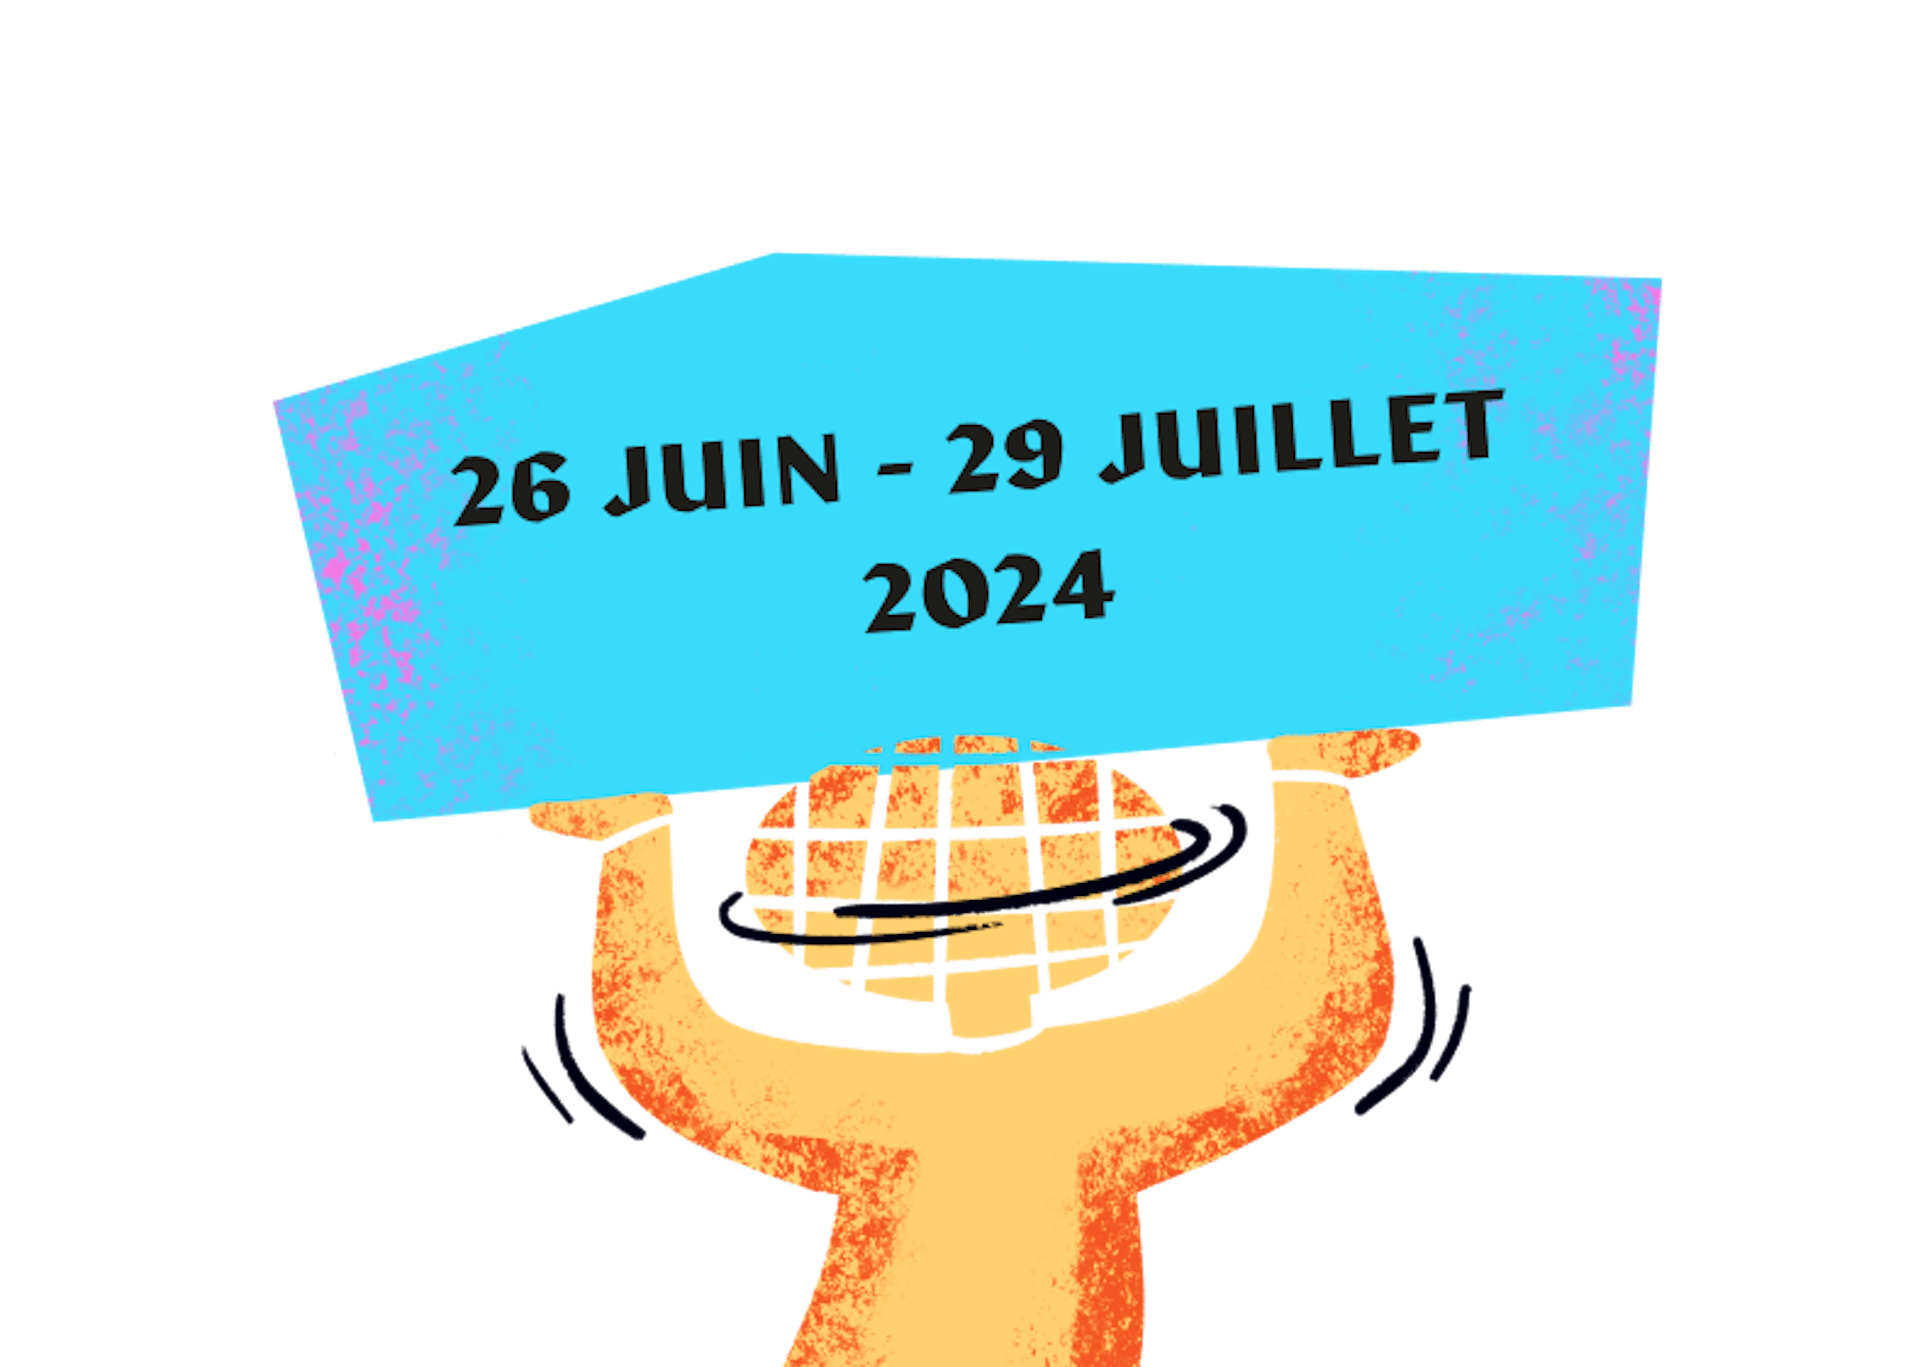 Un personnage avec une tête en forme de boule à facettes soulevant les dates du festival de Poupet, ayant lieu du 26 juin au 29 juillet 2024.